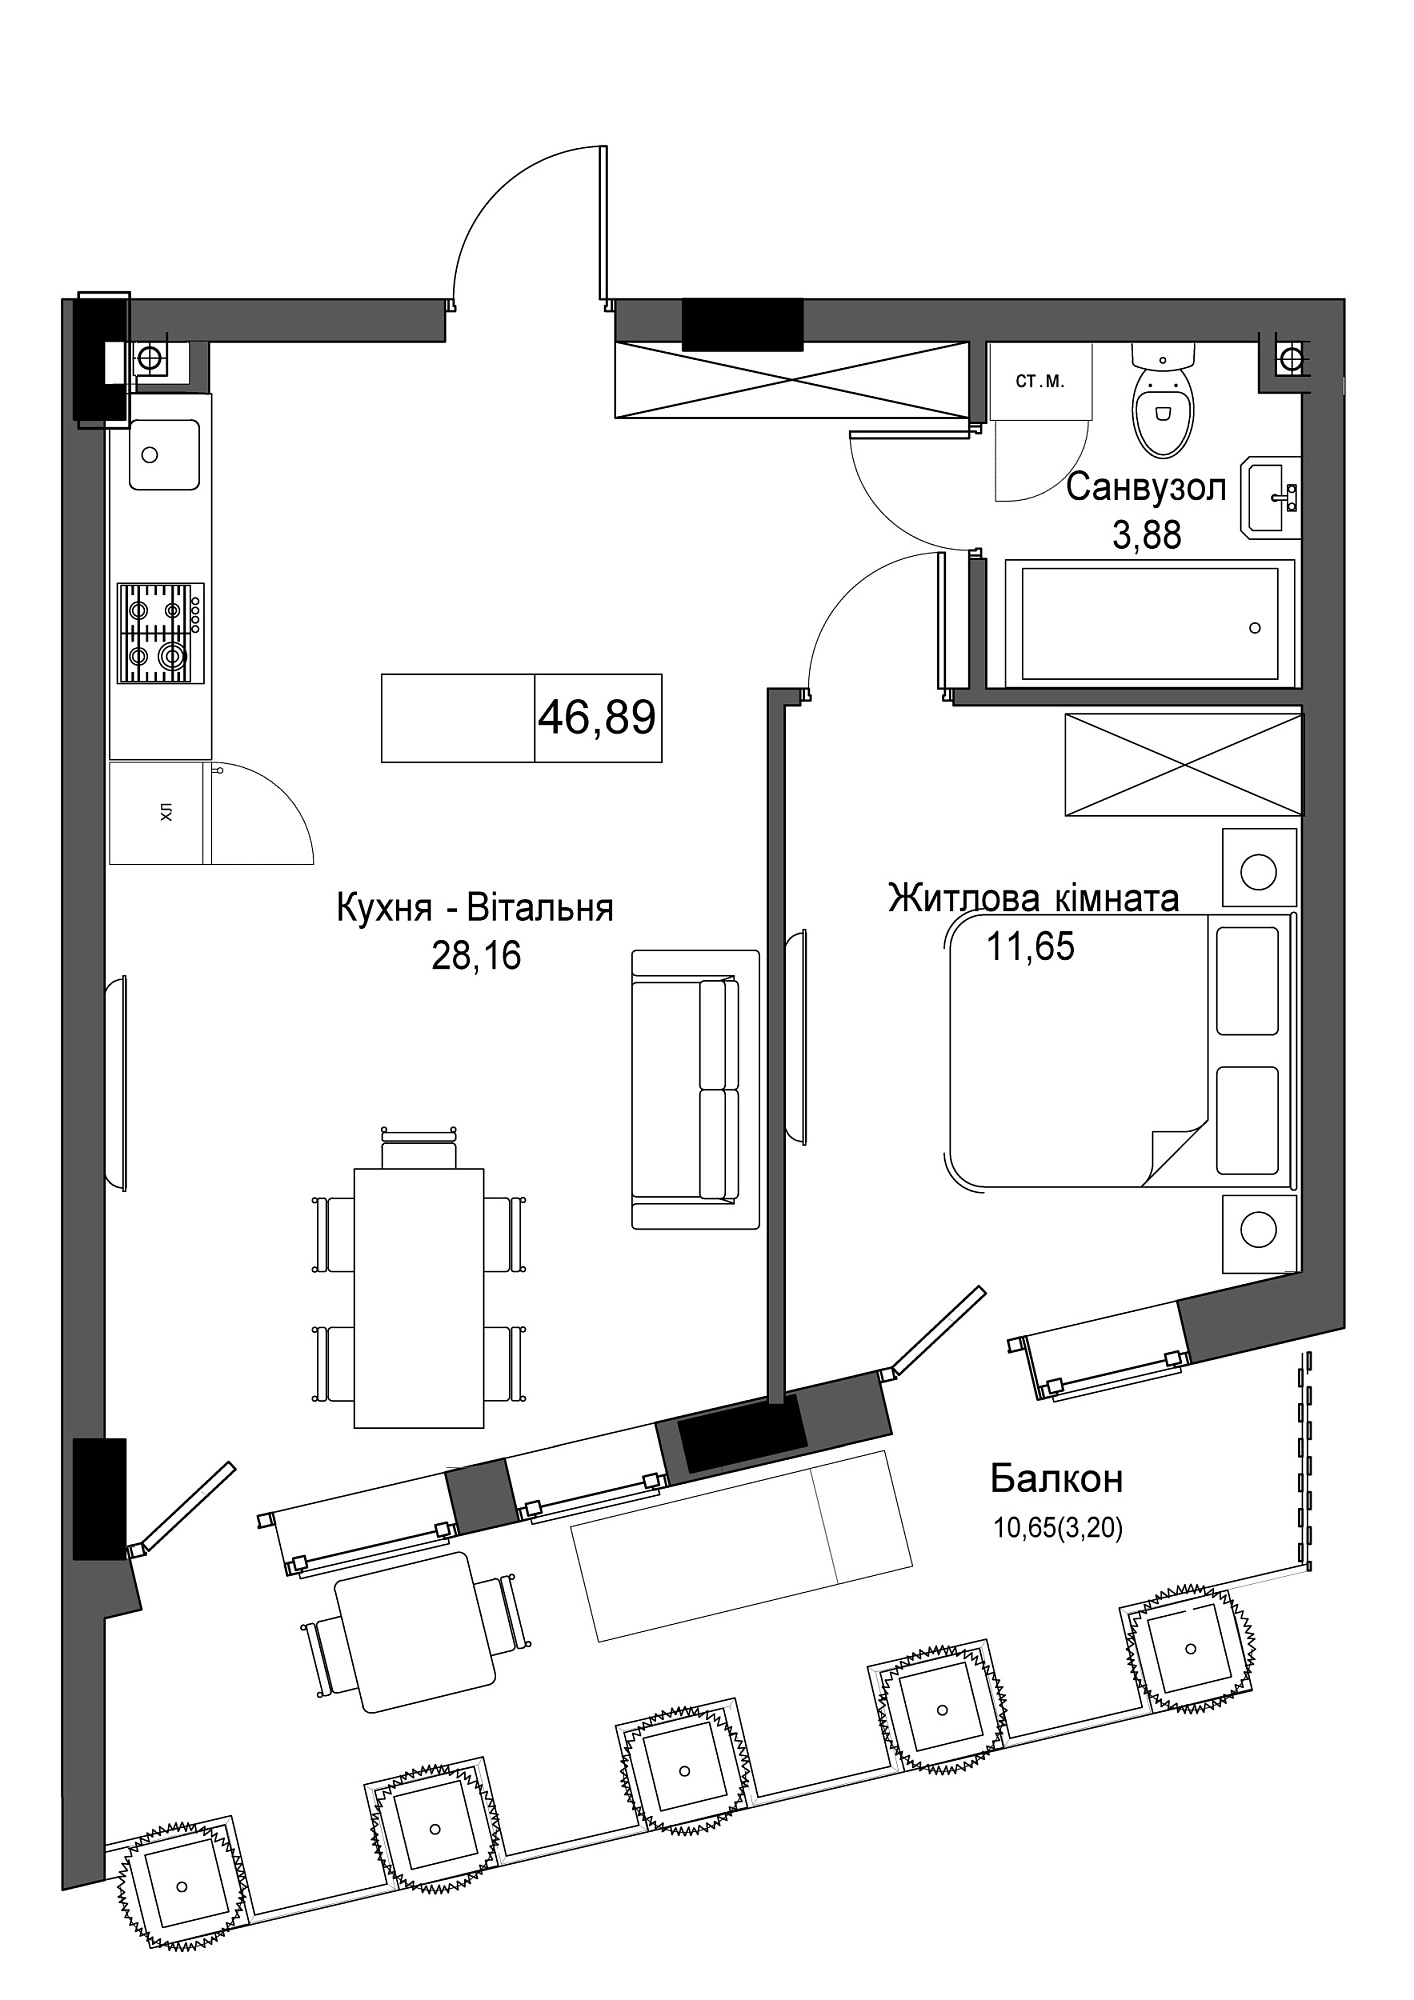 Планировка 1-к квартира площей 46.89м2, UM-001-04/0008.